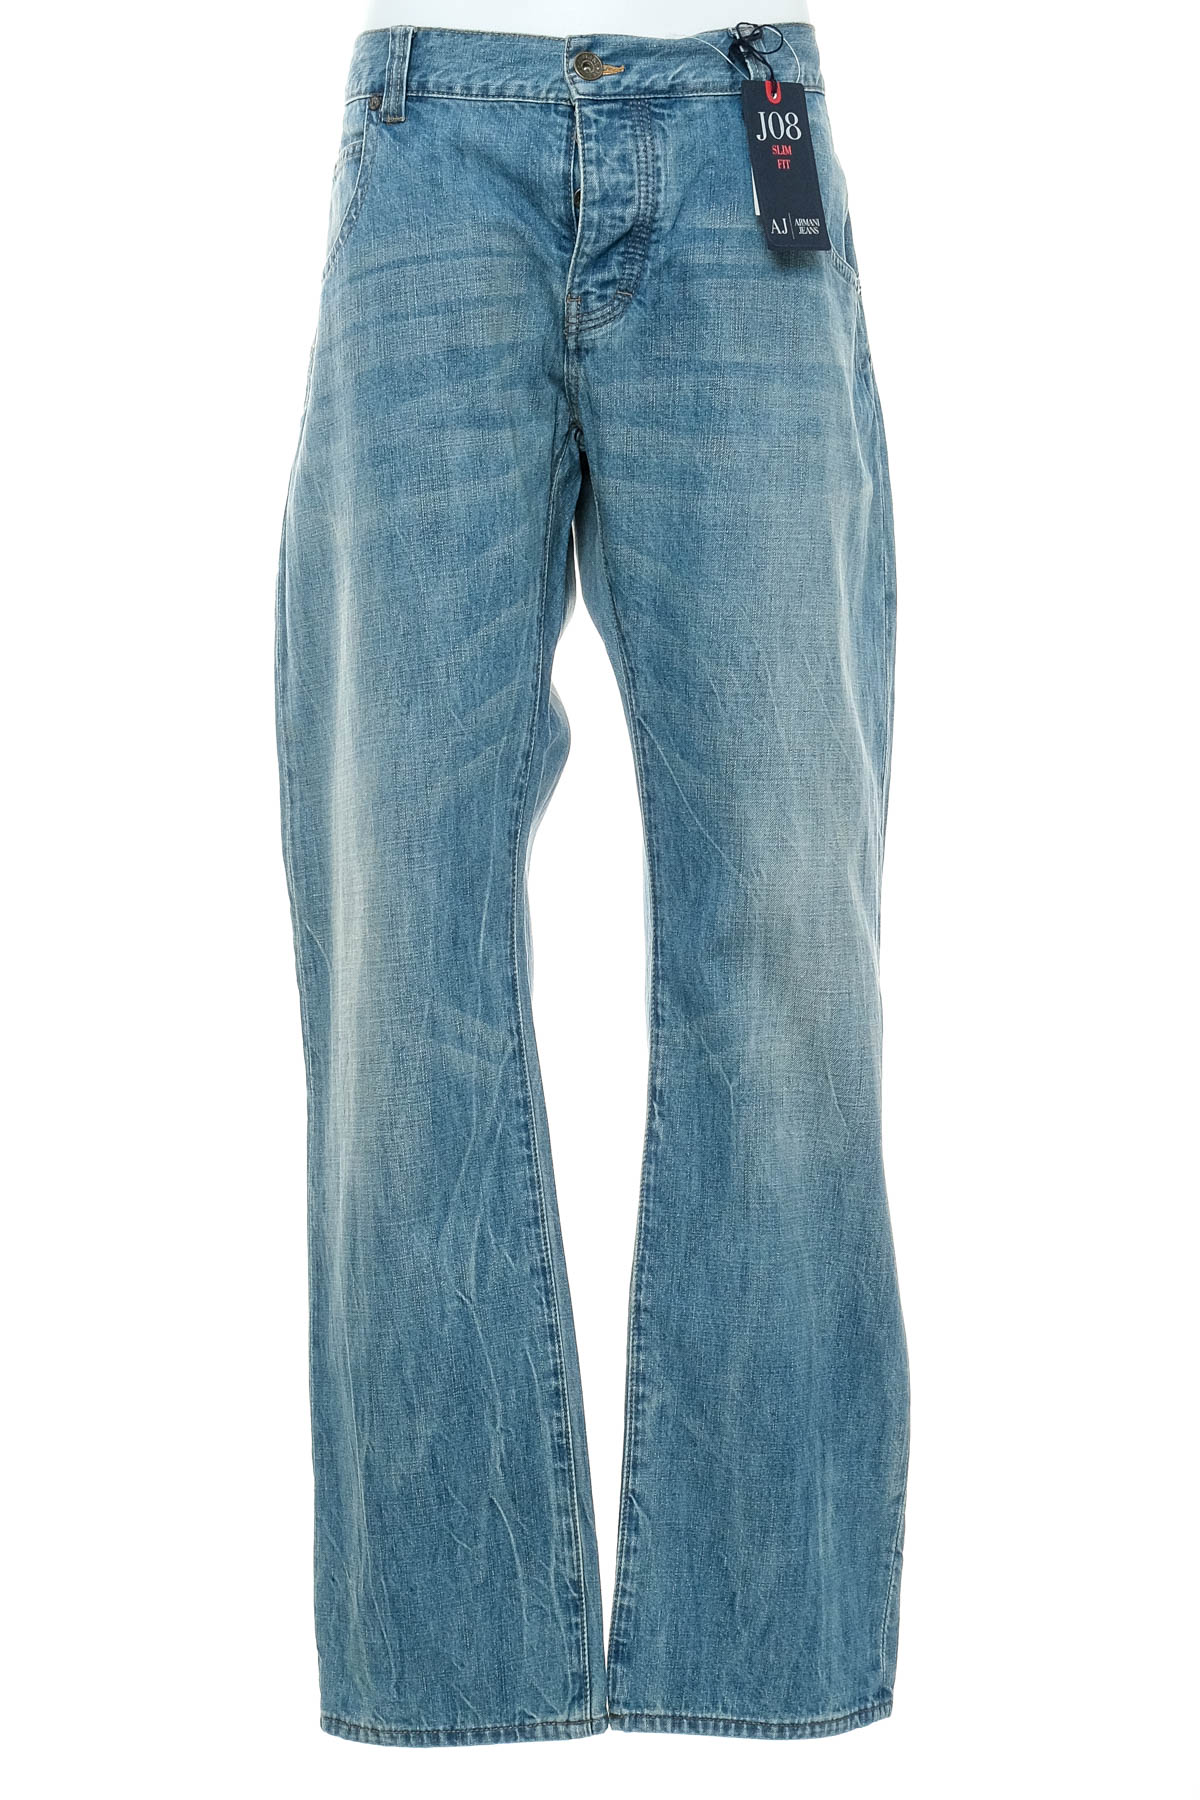 Męskie dżinsy - Armani Jeans - 0